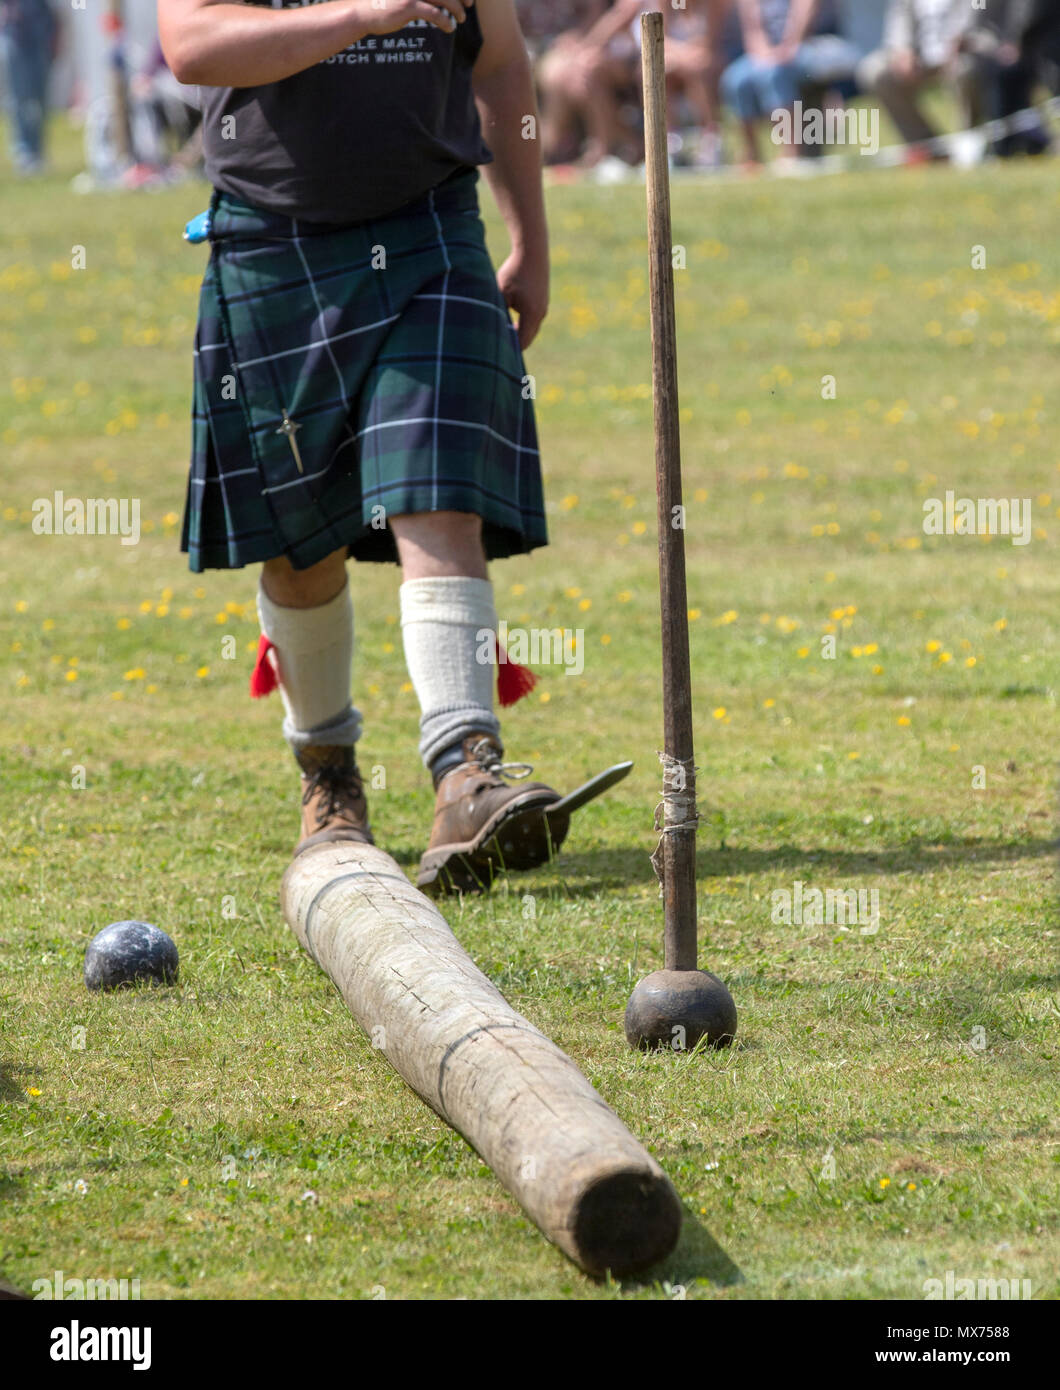 Cornhill, Scotland - 02 Jun 2018: Heavy events at the Highland Games in Cornhill, Scotland. Stock Photo